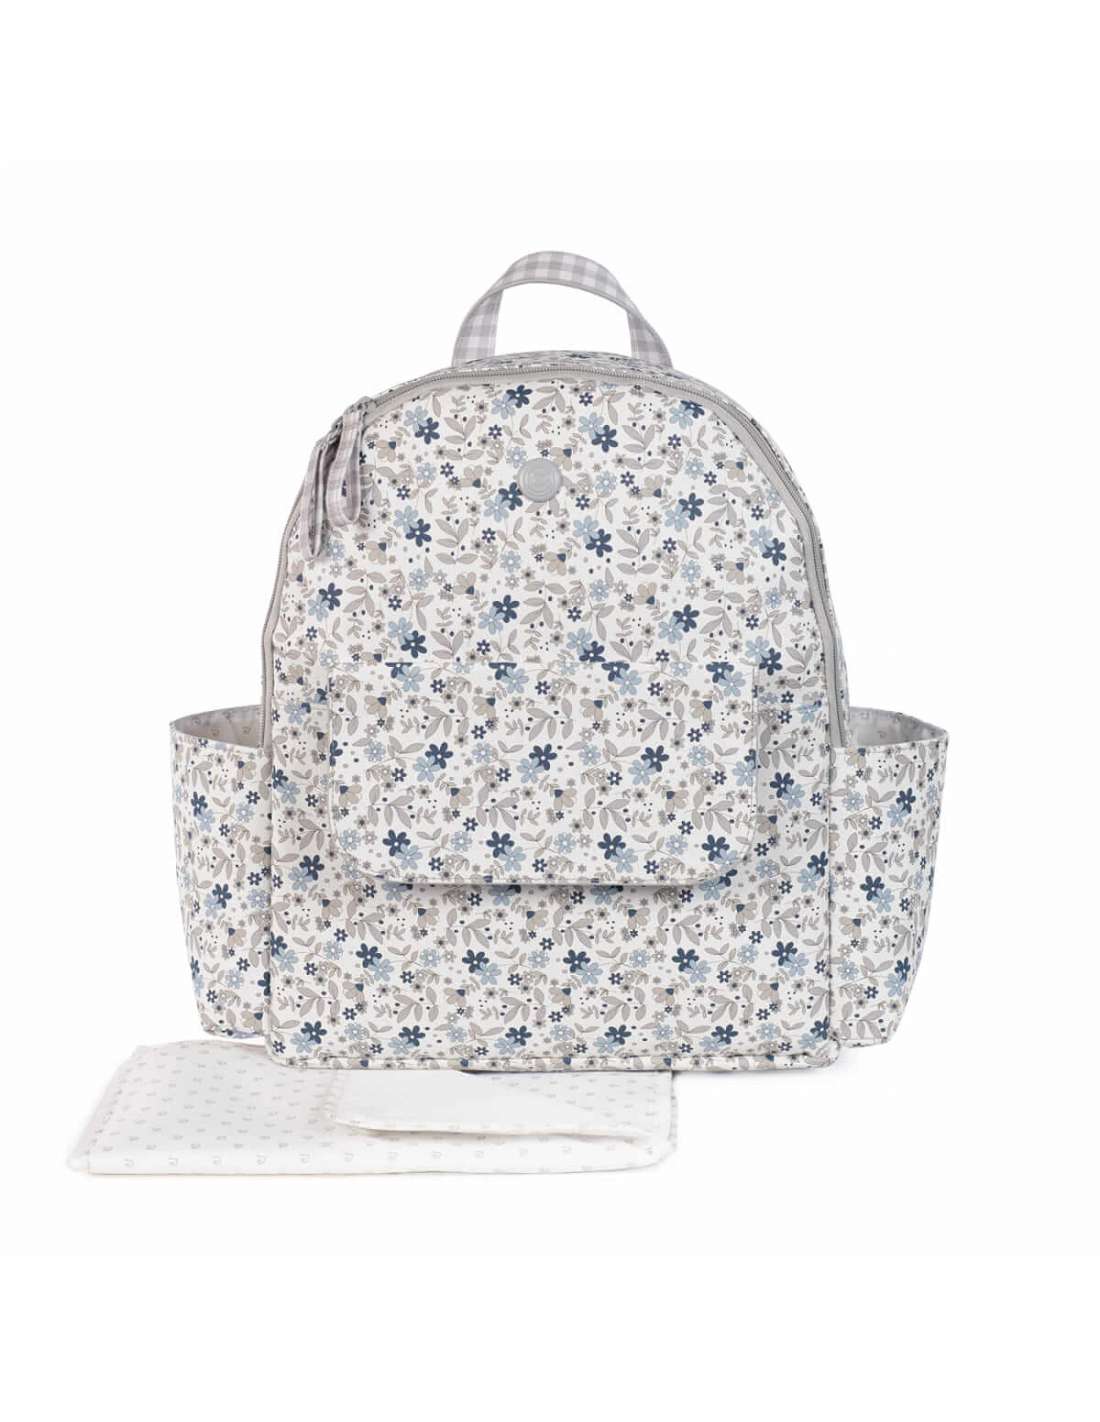 Pasito a Pasito Delia Floral Maternity Backpack - Blue